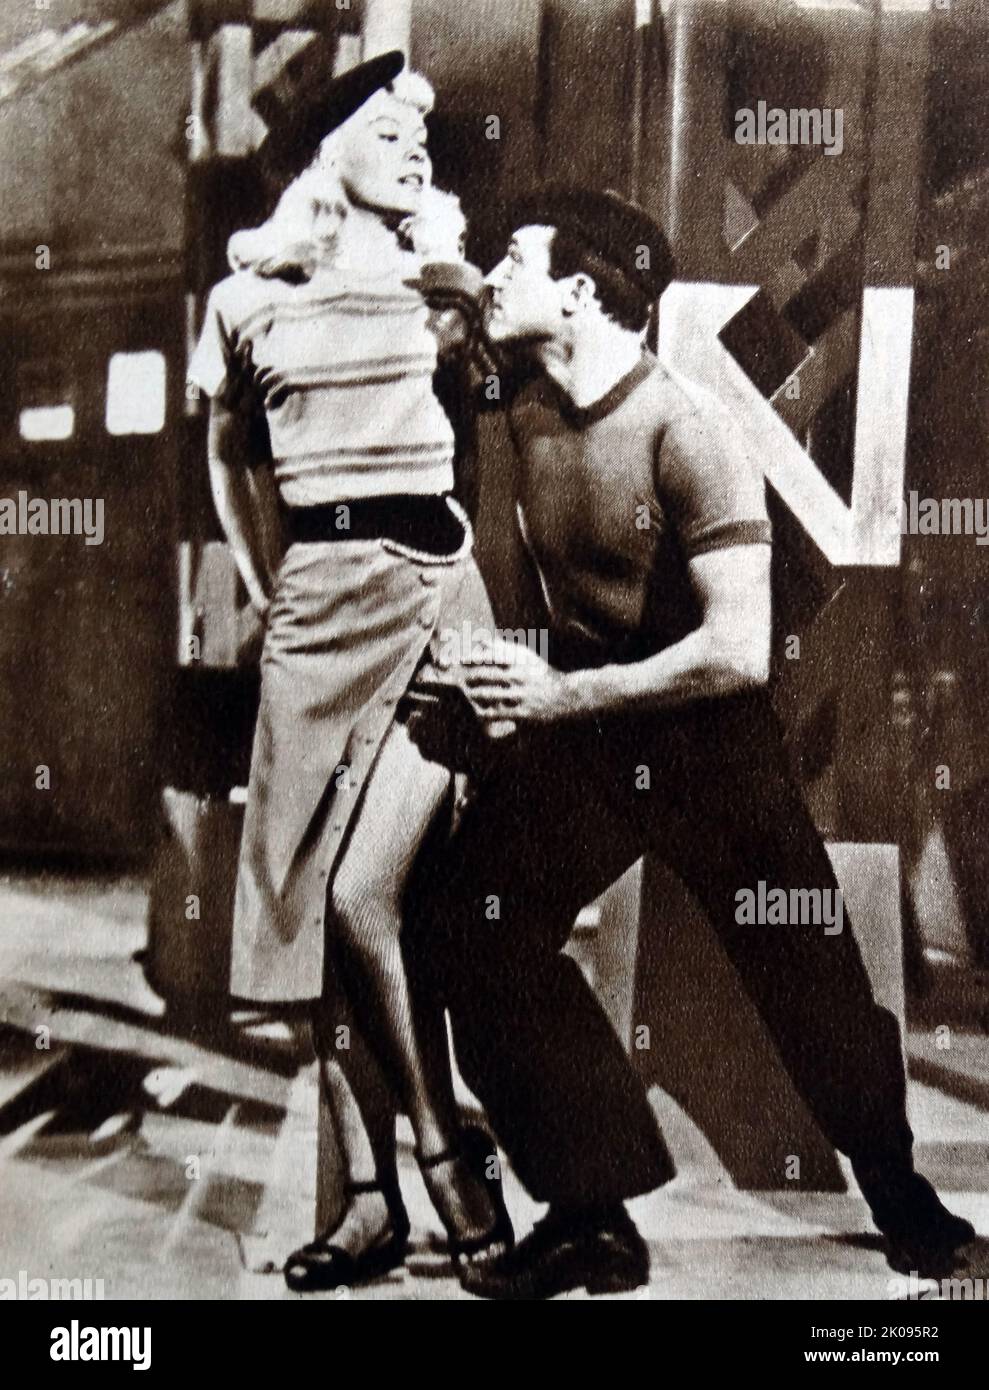 Gene Kelly. Eugene Curran Kelly (23 agosto 1912 – 2 febbraio 1996) è stato un . Era conosciuto per il suo stile di ballo energico e atletico, per il suo bel look e per i personaggi simpatici che giocava sullo schermo. Foto Stock